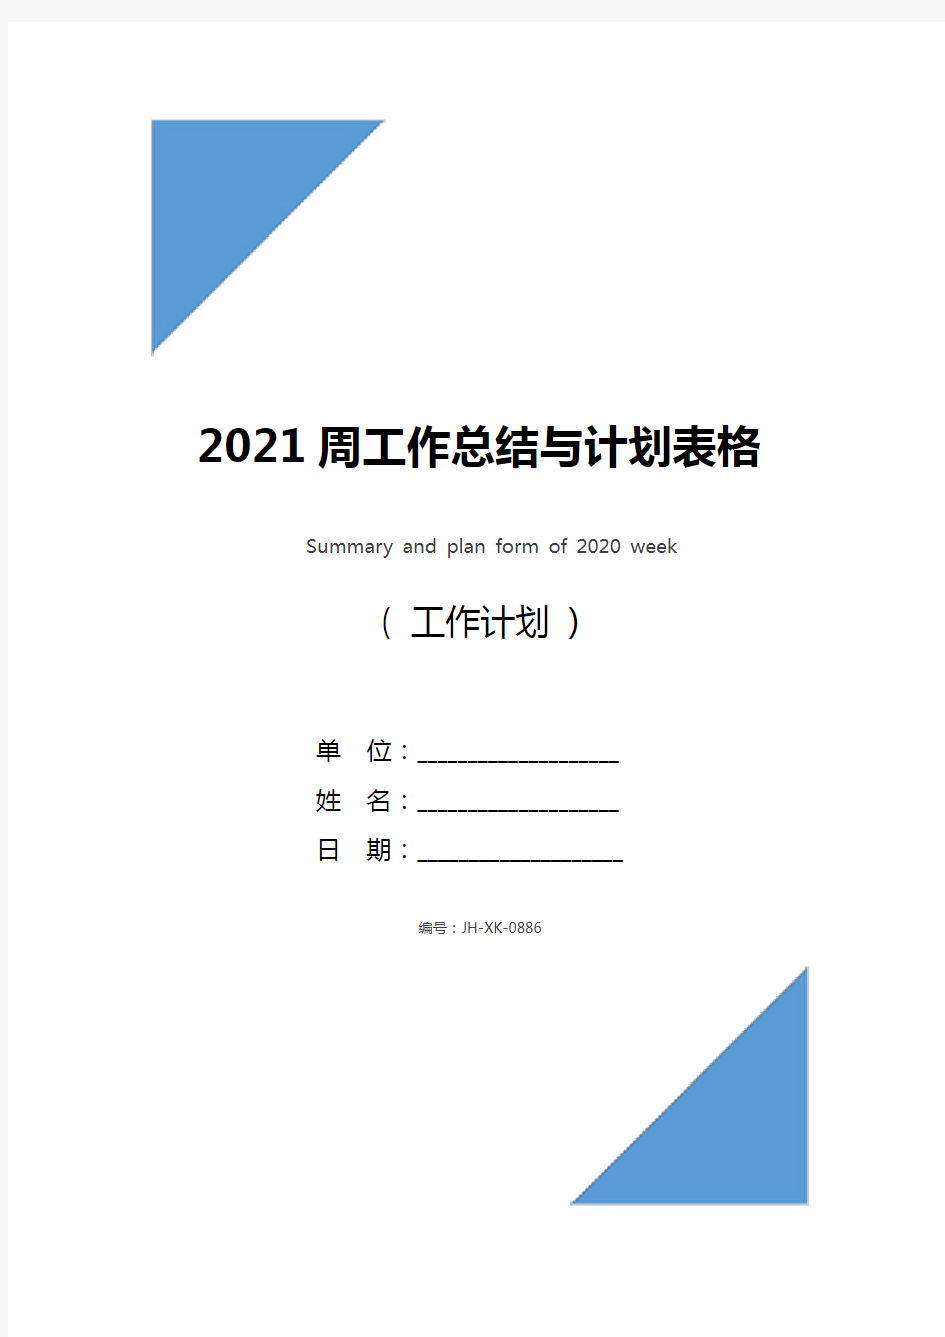 2021周工作总结与计划表格(最新版)